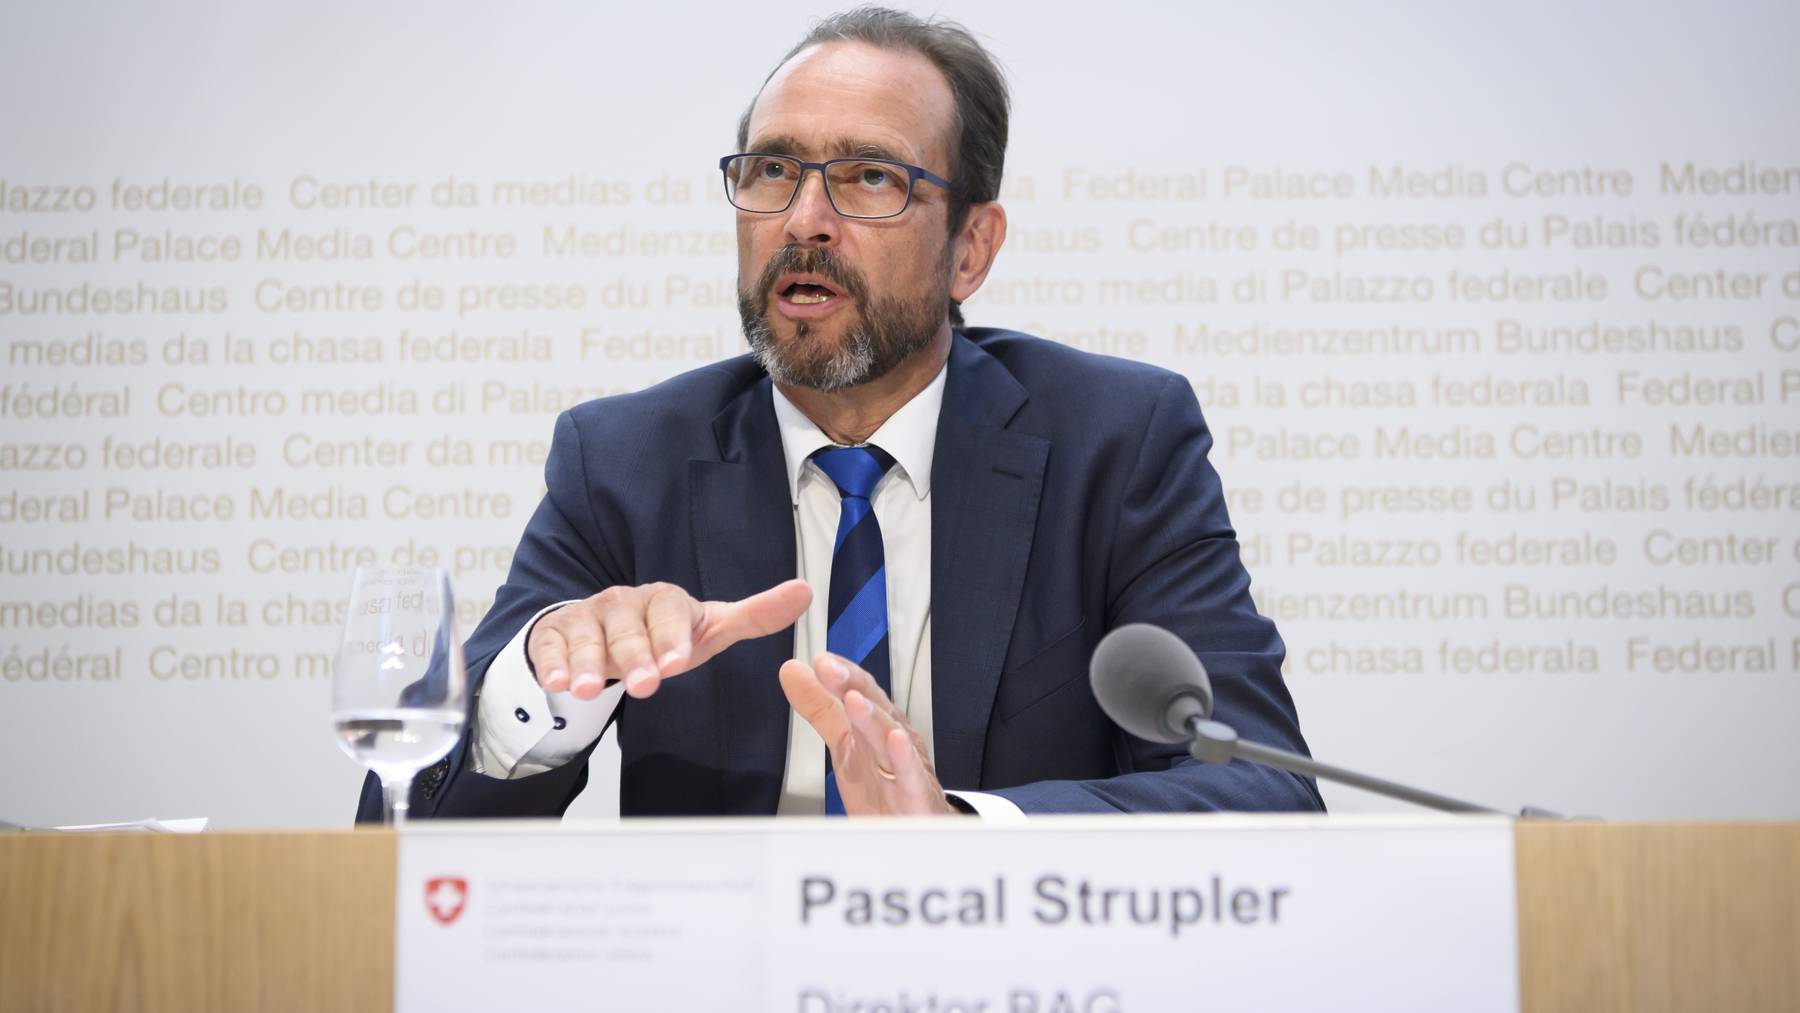 Das Bundesamt für Gesundheit von Direktor Pascal Strupler publizierte am Freitag falsche Infektionszahlen. Am Sonntag korrigiert sich das BAG.